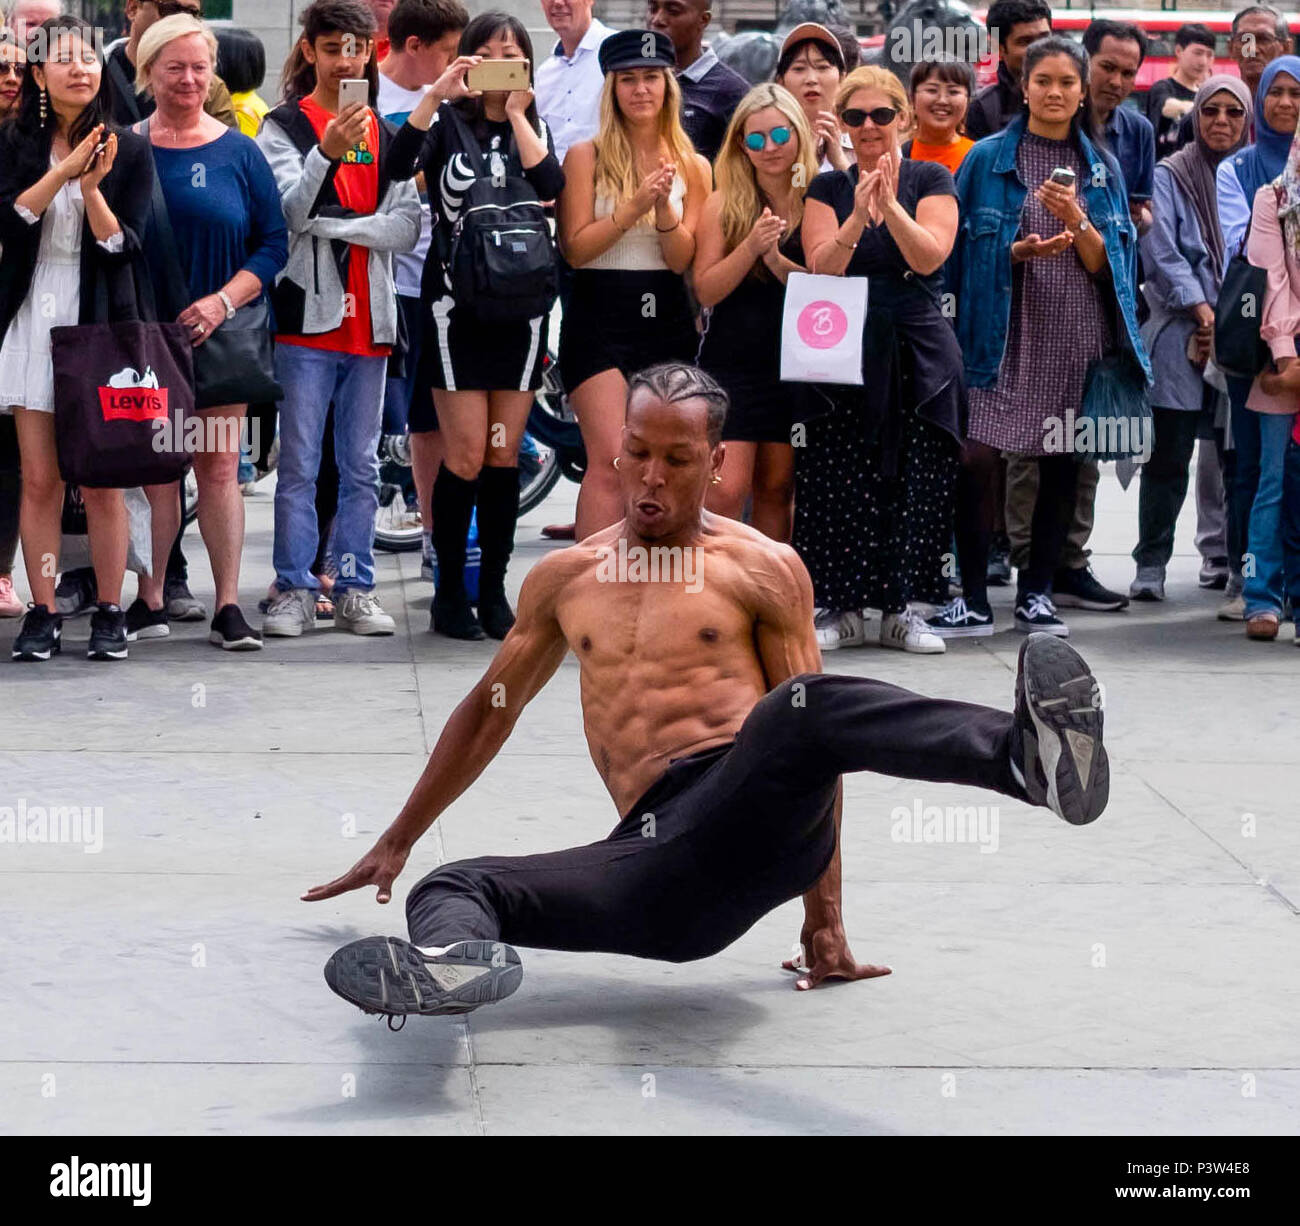 London, Großbritannien. Juni 2018 19. Touristen sammeln auf dem Trafalgar Square Straßenkünstler an einem sonnigen Nachmittag zu beobachten. Dies war eine Anzeige von Breakdance und hip hop Musik. © Tim Ring/Alamy leben Nachrichten Stockfoto